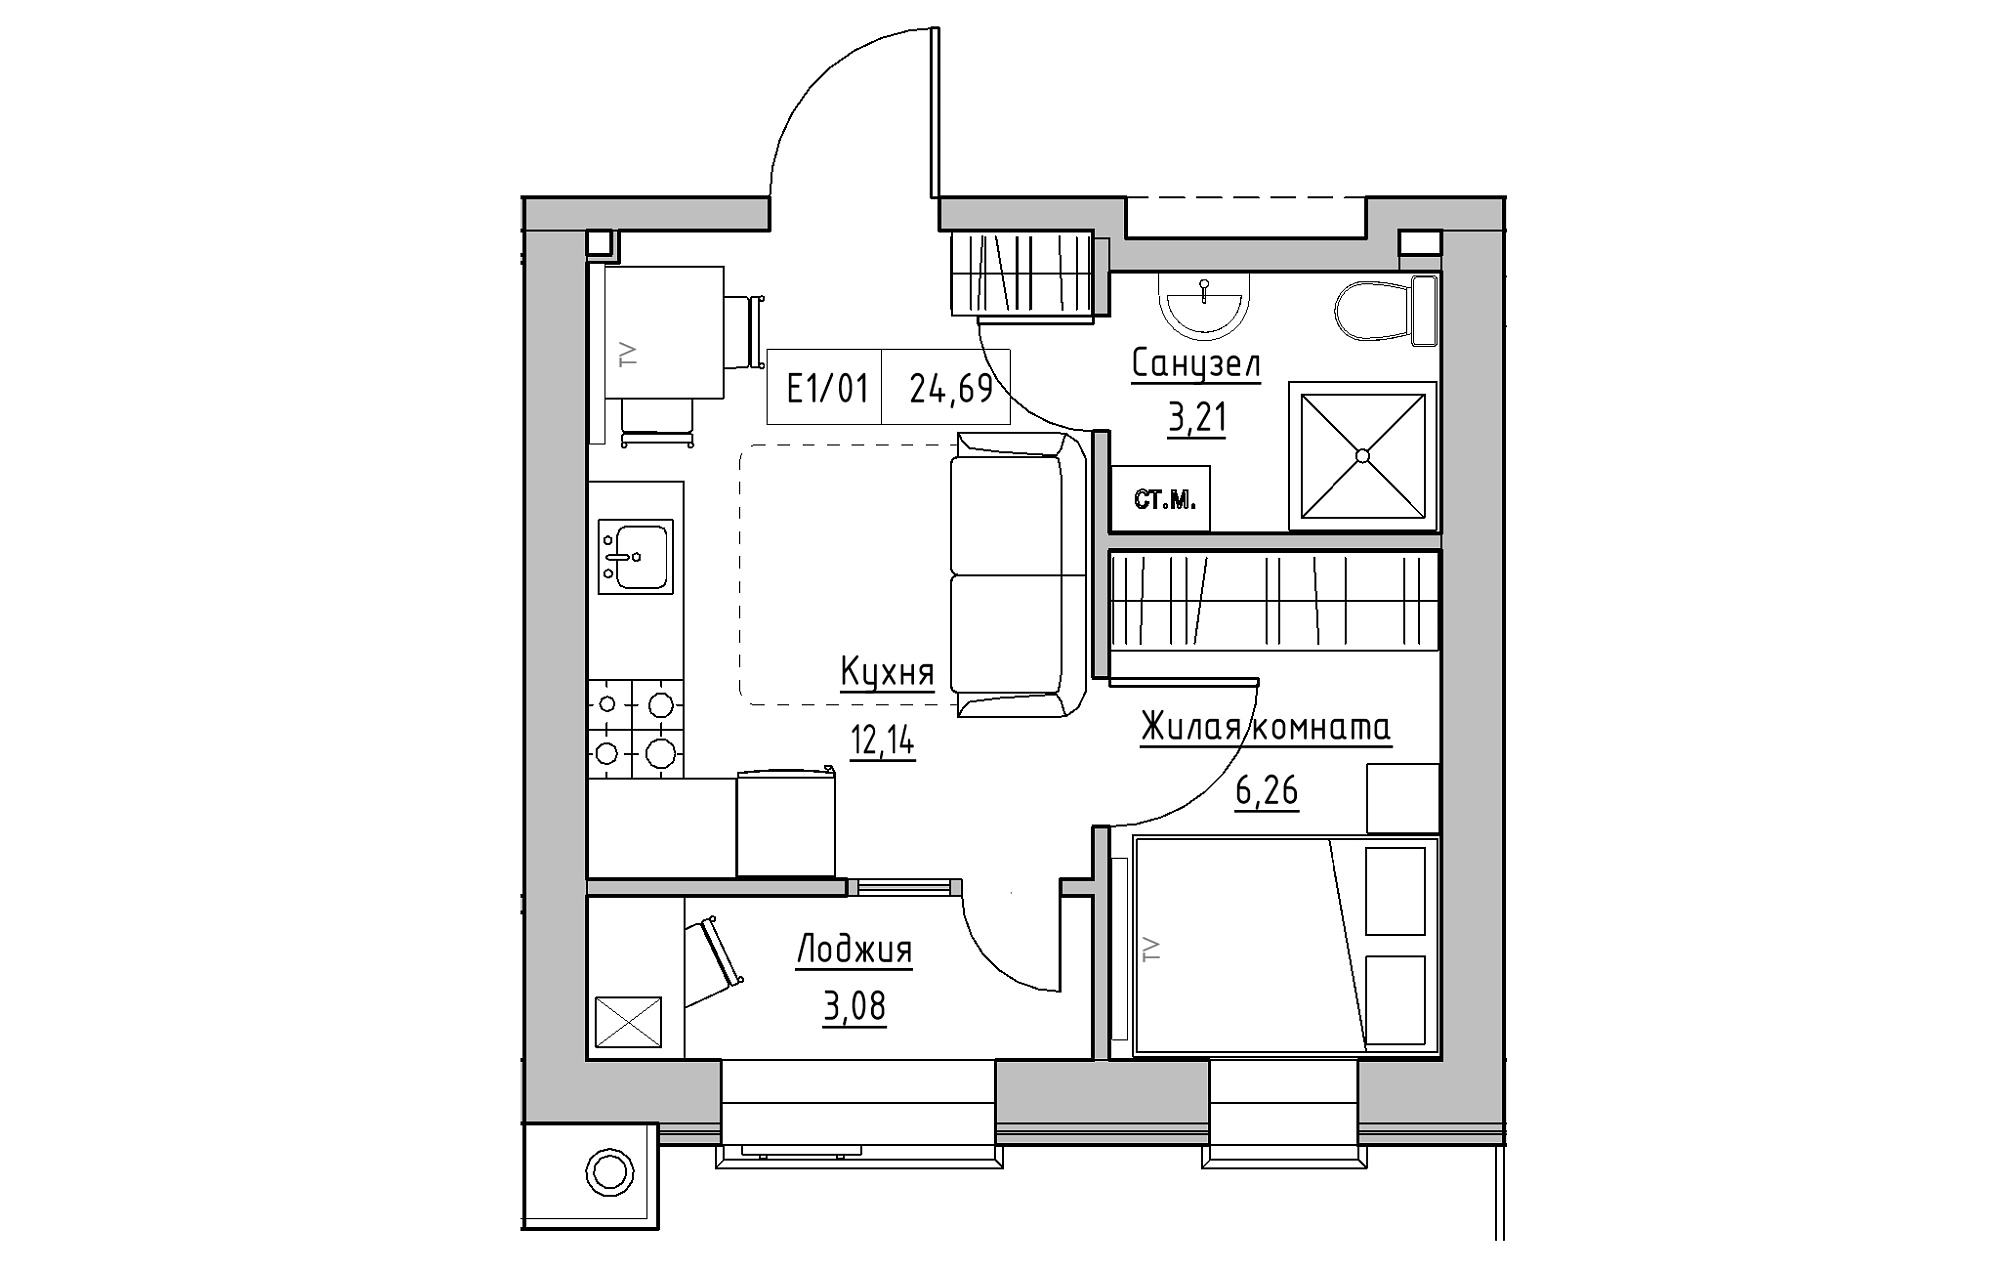 Планировка 1-к квартира площей 24.69м2, KS-013-01/0012.